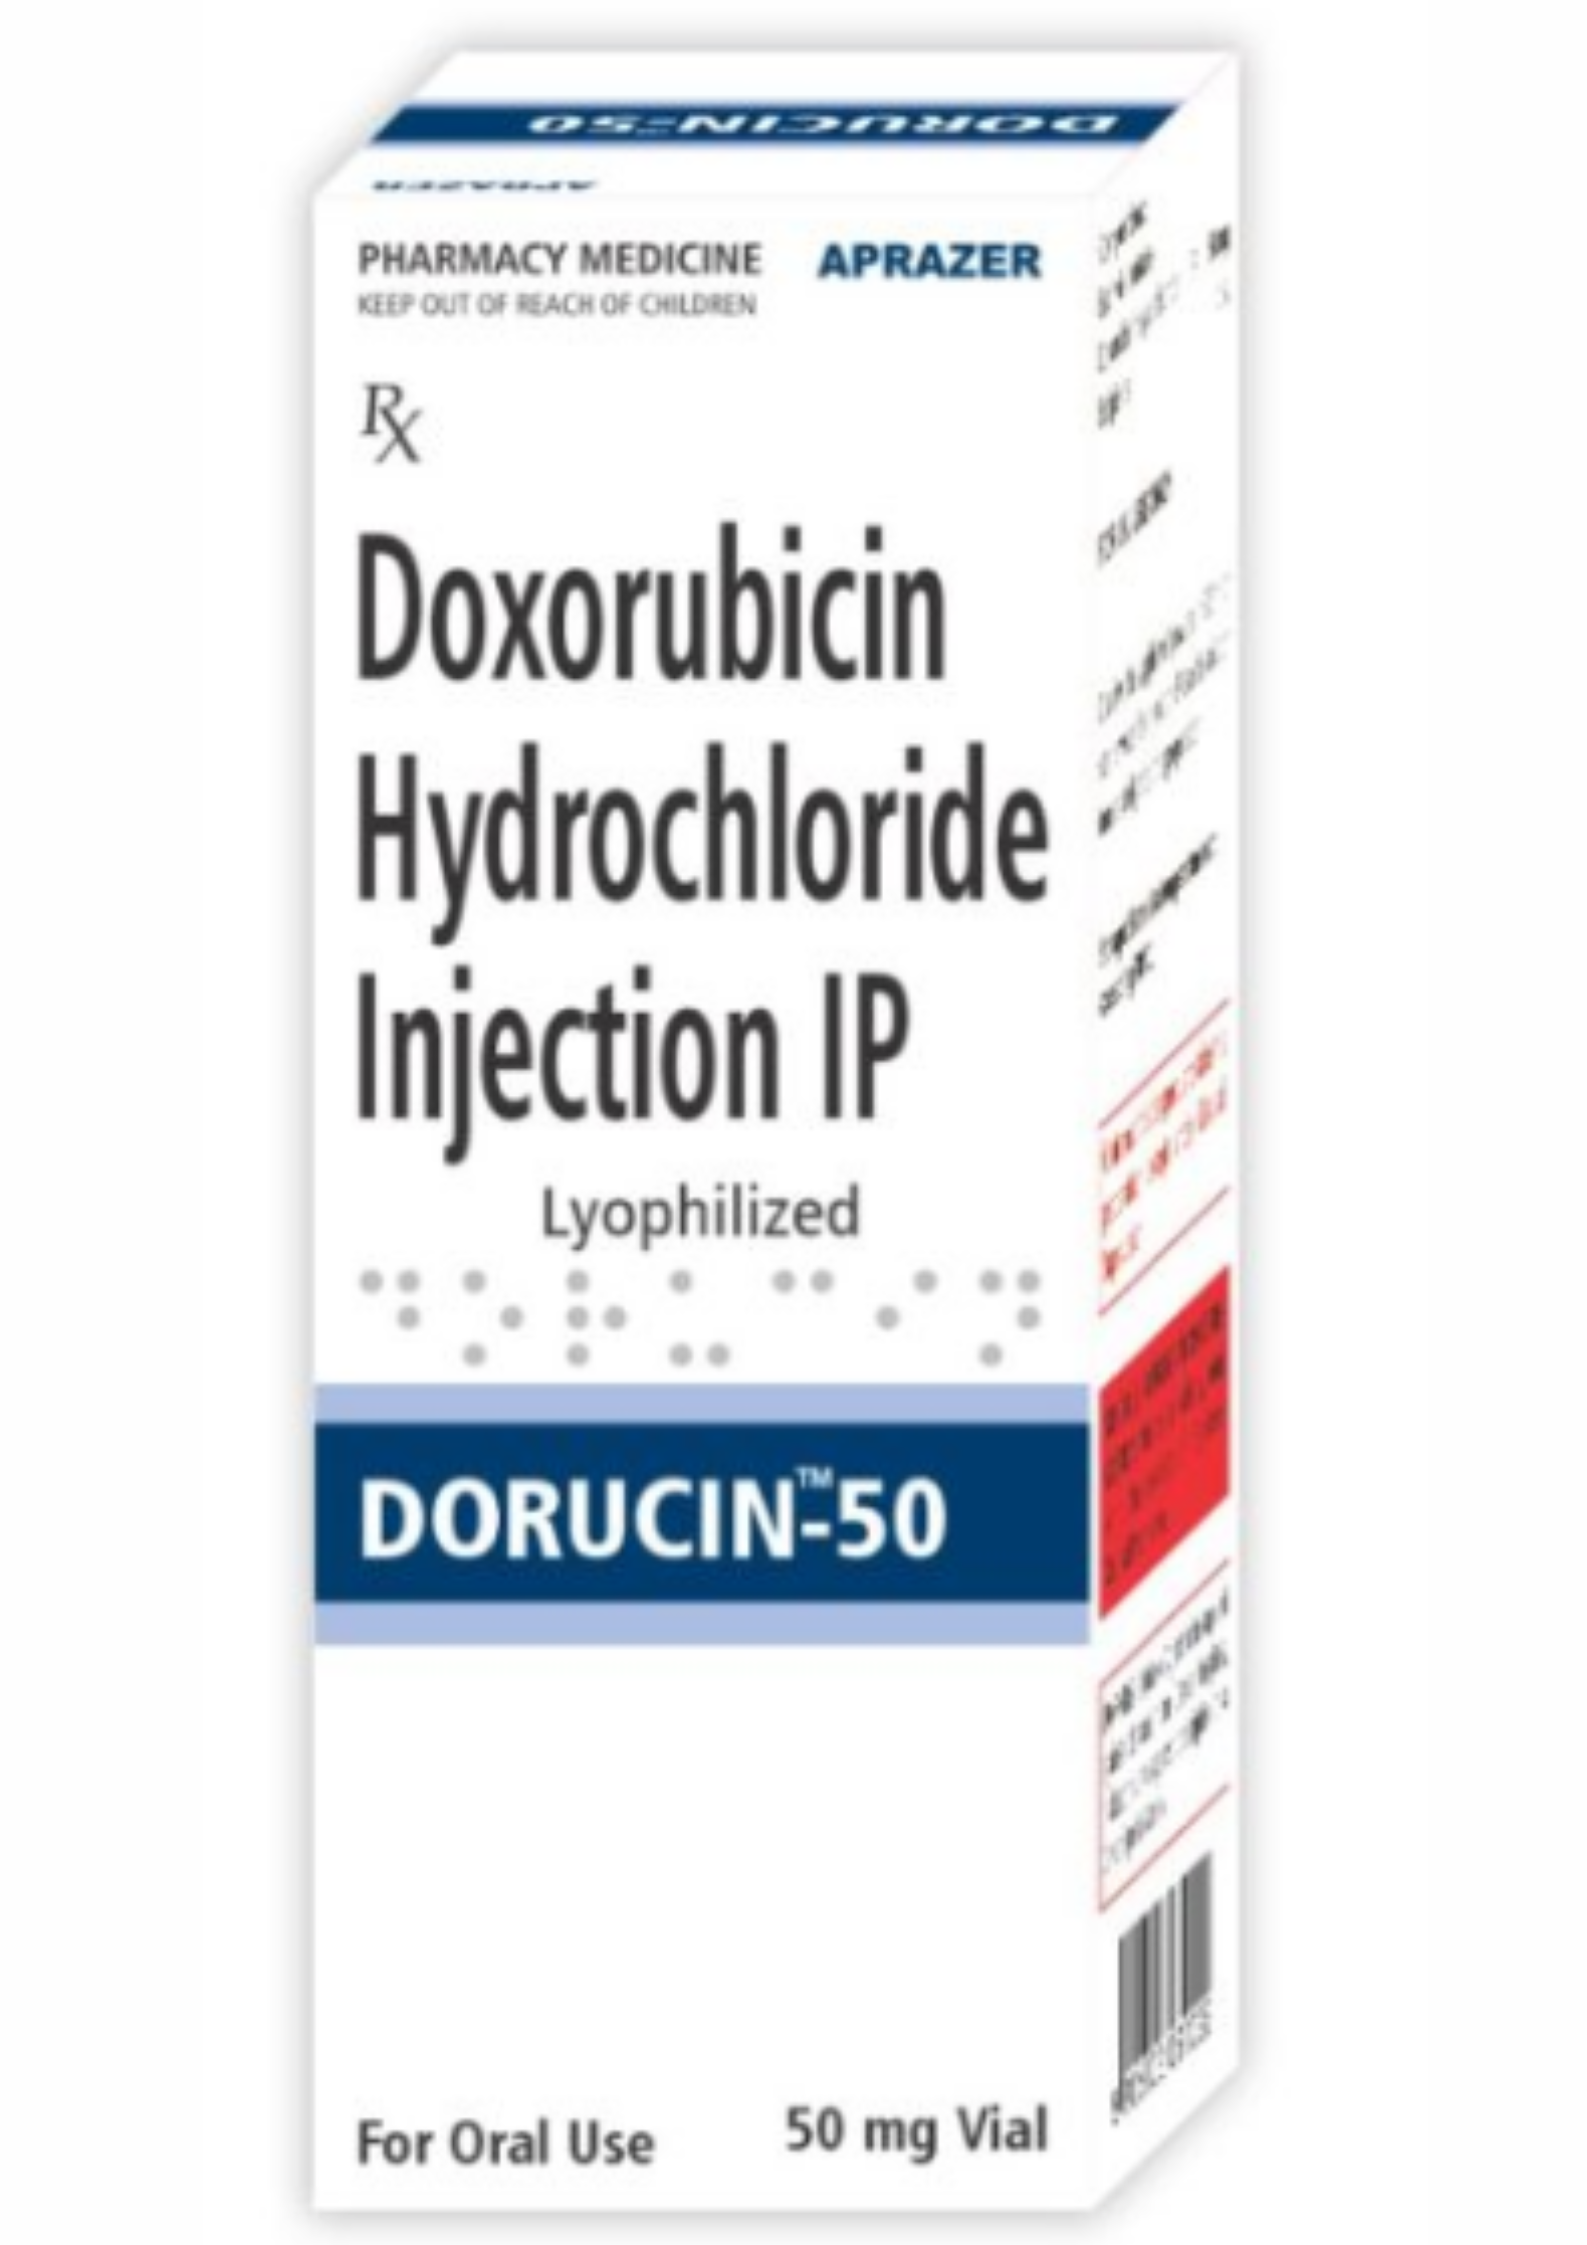 Dorucin Doxorubicin Hydrochloride Injection